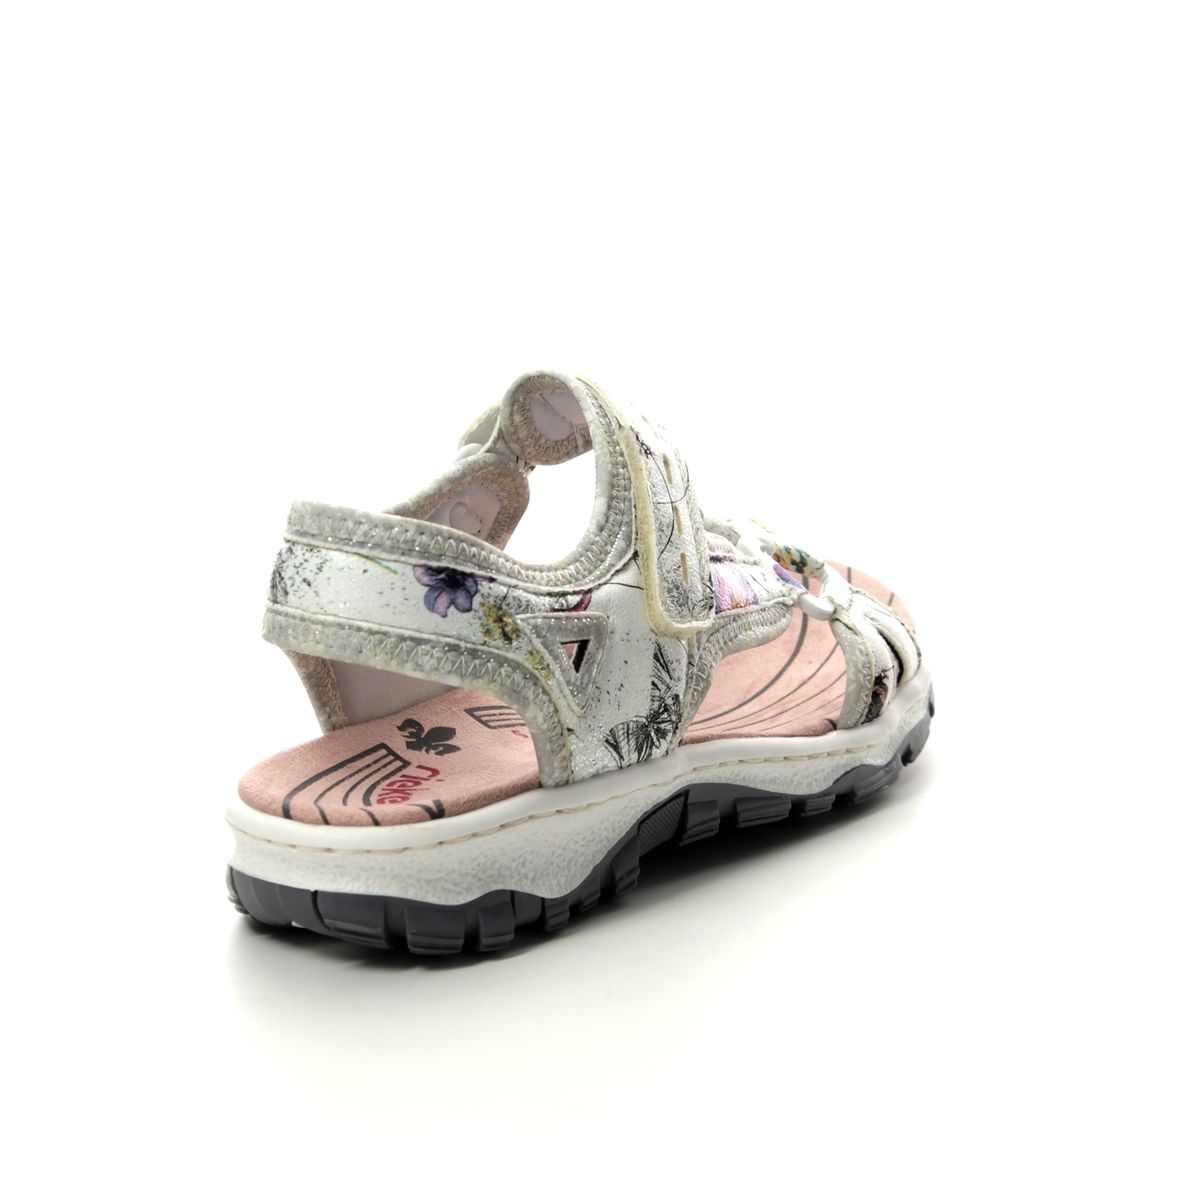 Buy > rieker ladies walking sandals sale > in stock